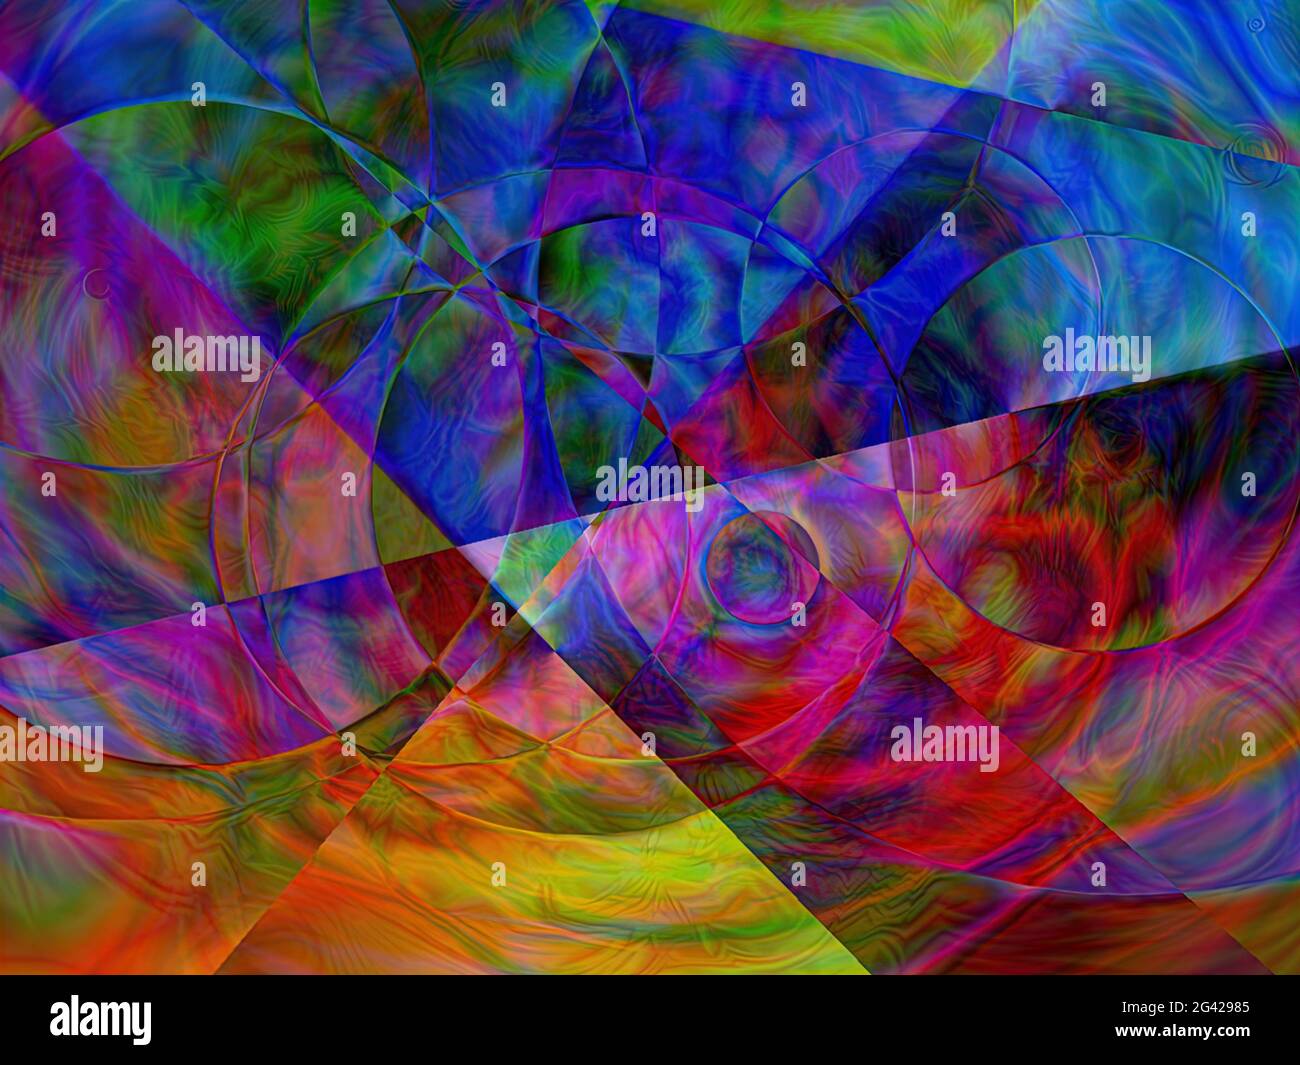 Abstrakte geometrische Farbverlauf Illustration; Quadrate und andere geometrische Formen mit verschiedenen Farben und Winkeln mit schönen Designs Stockfoto